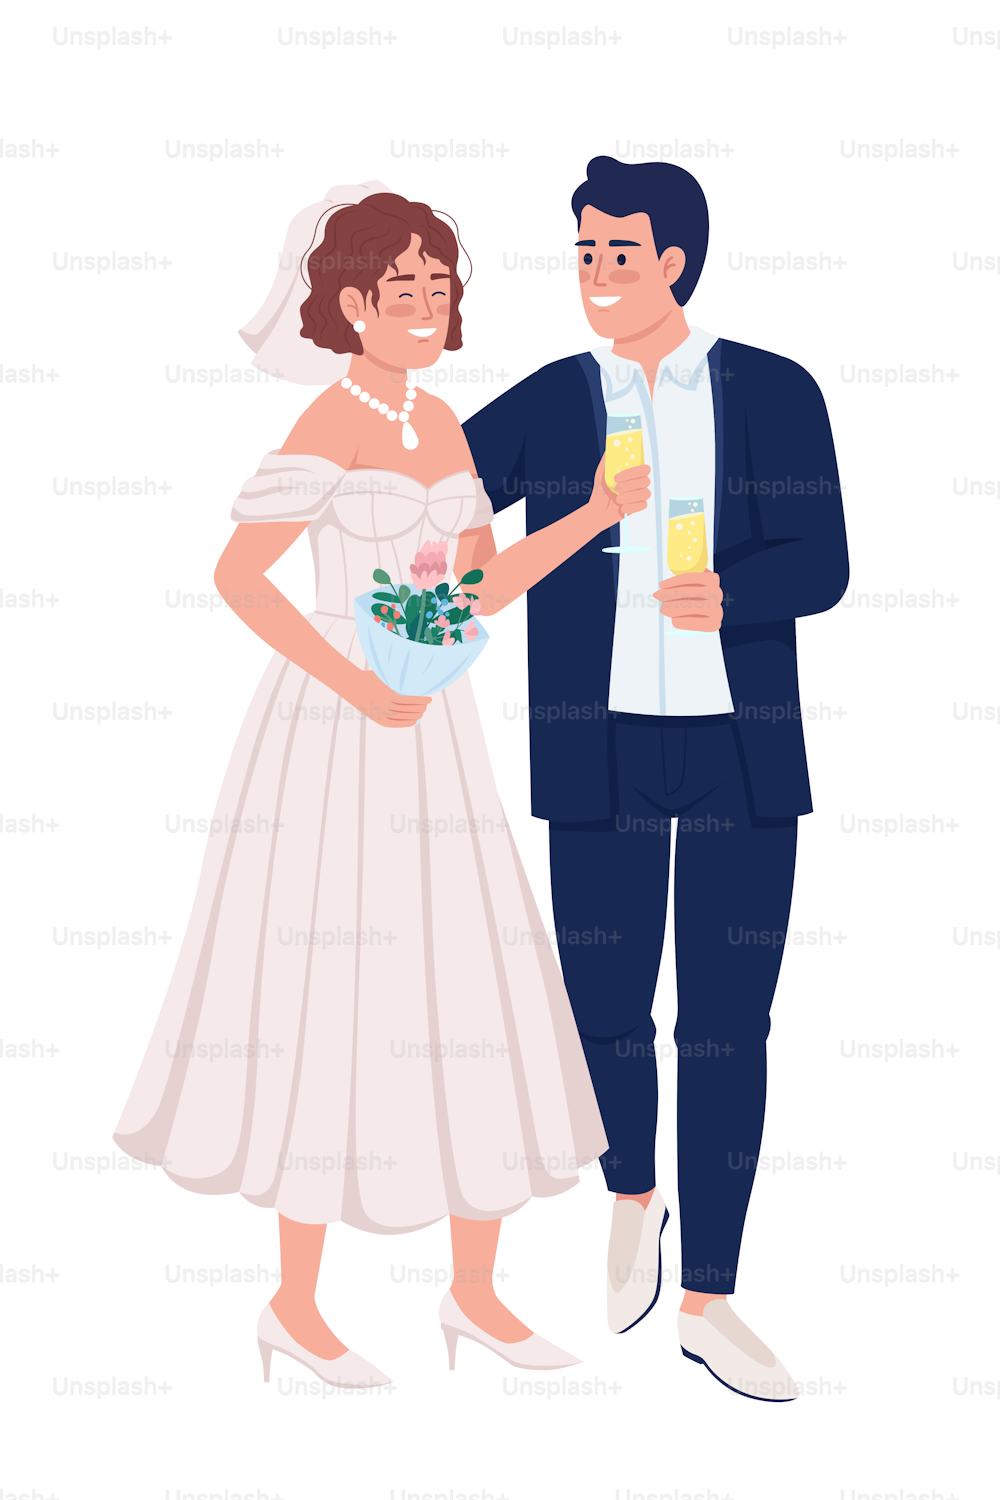 スパークリングワインのセミフラットカラーベクター画像文字を飲む幸せな新婚夫婦。編集可能な図。白い背景に全身の人々。Webグラフィックデザインとアニメーション用のシンプルな漫画スタイルのイラスト